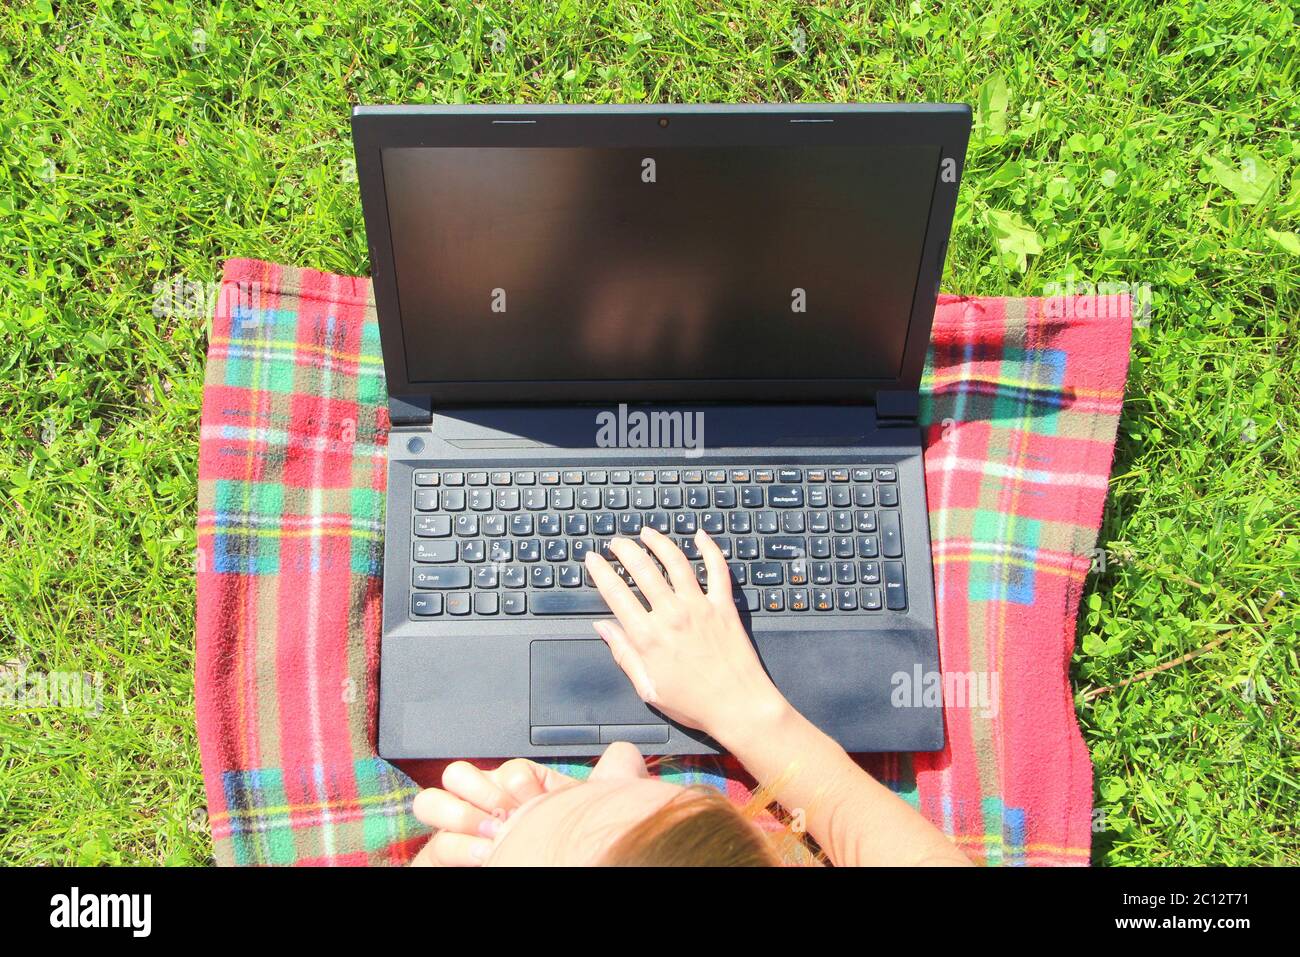 Der Laptop ist auf dem grünen Gras auf einem rot karierten Karomuschel, das Mädchen arbeitet am Computer auf dem Rasen. Die Hand des Mannes ist auf der Tastatur. Stockfoto